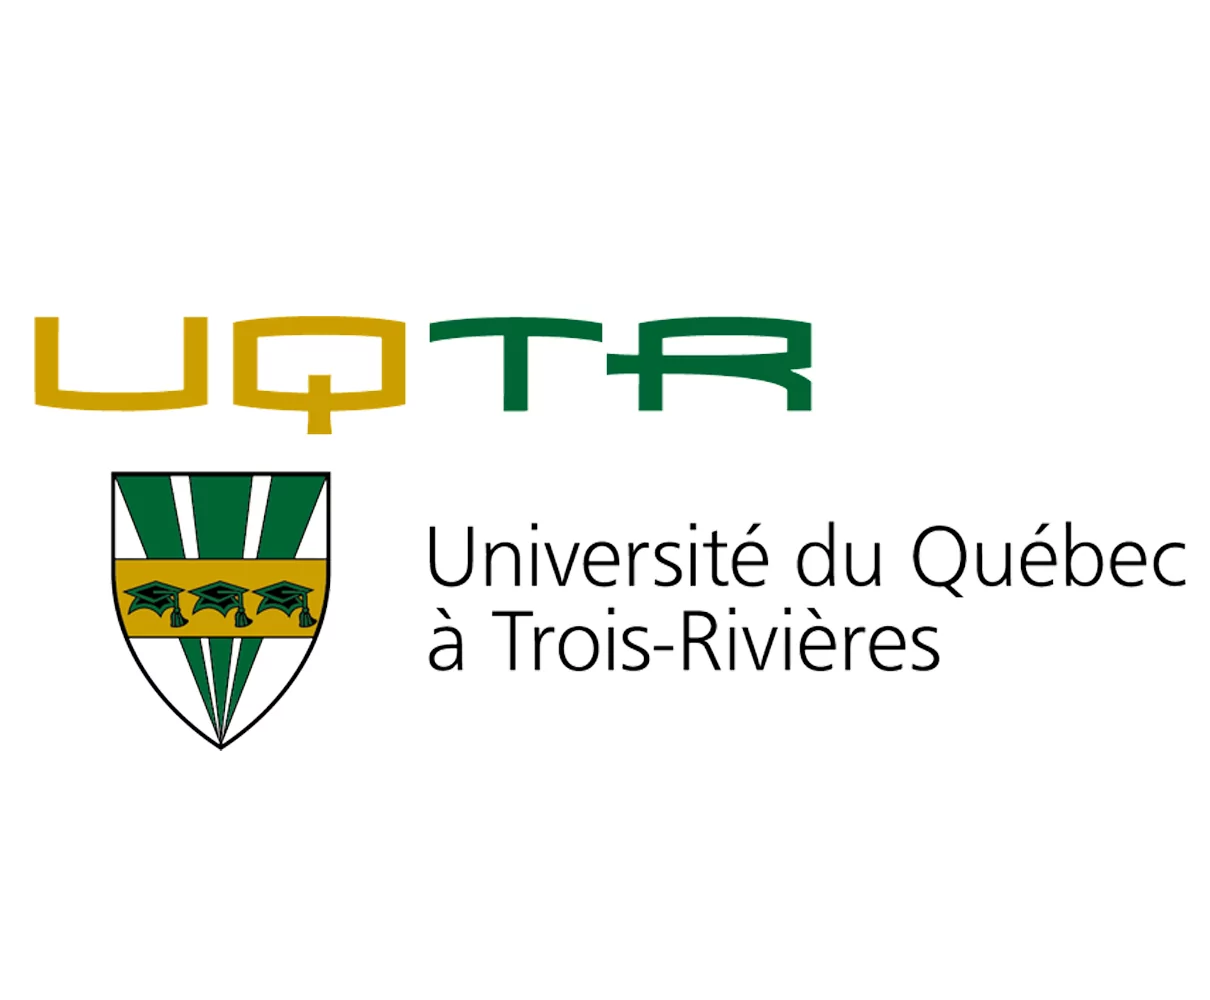 Avis d’appel à candidature pour une bourse de recherche doctorale à l’Université du Québec à Trois-Rivières (UQTR), Canada